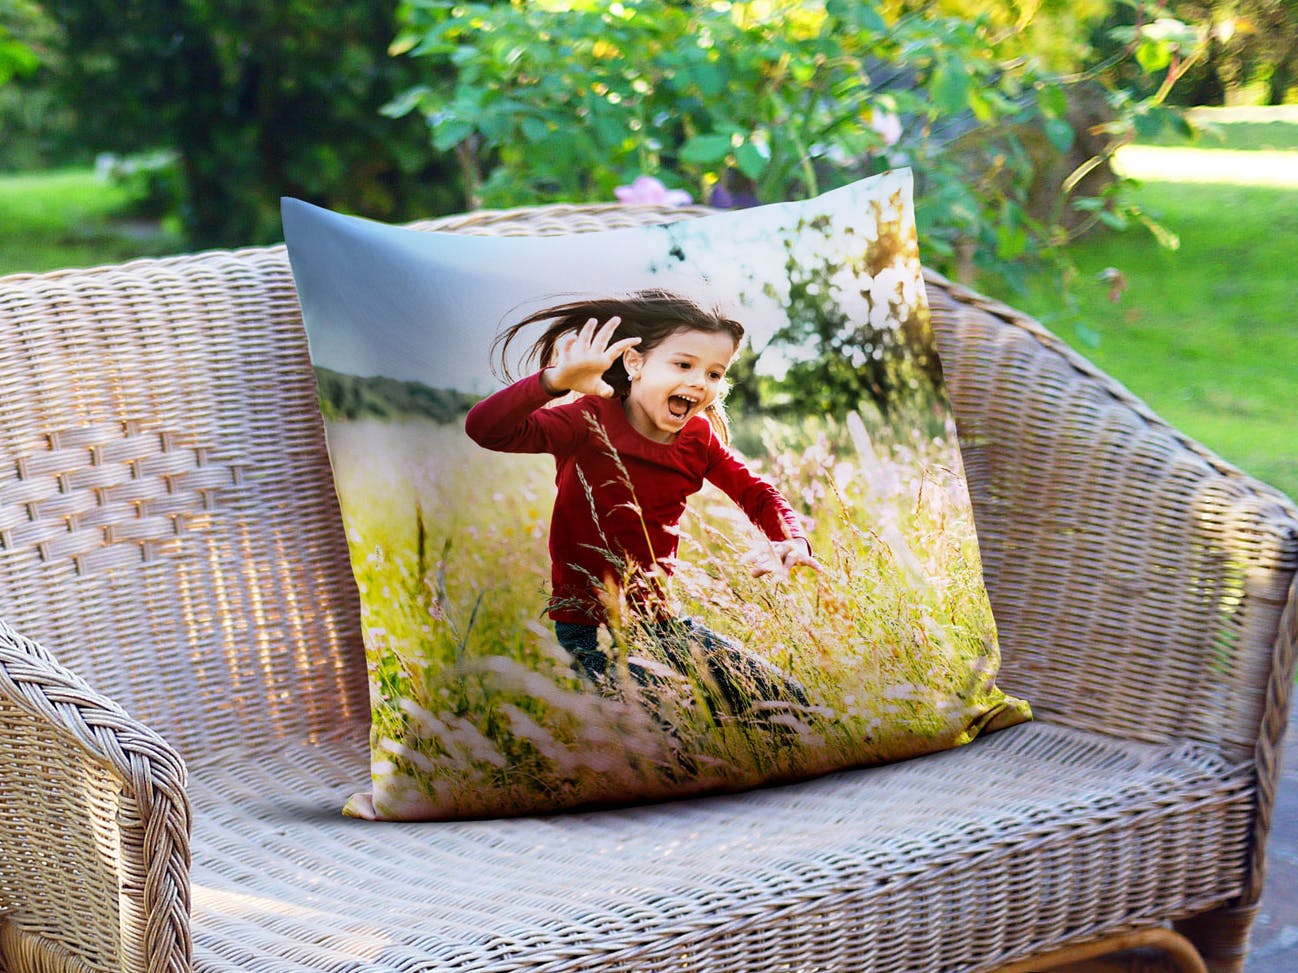 Cojín personalizado cuadrado en un banco de jardín con fotos de una niña que ríe